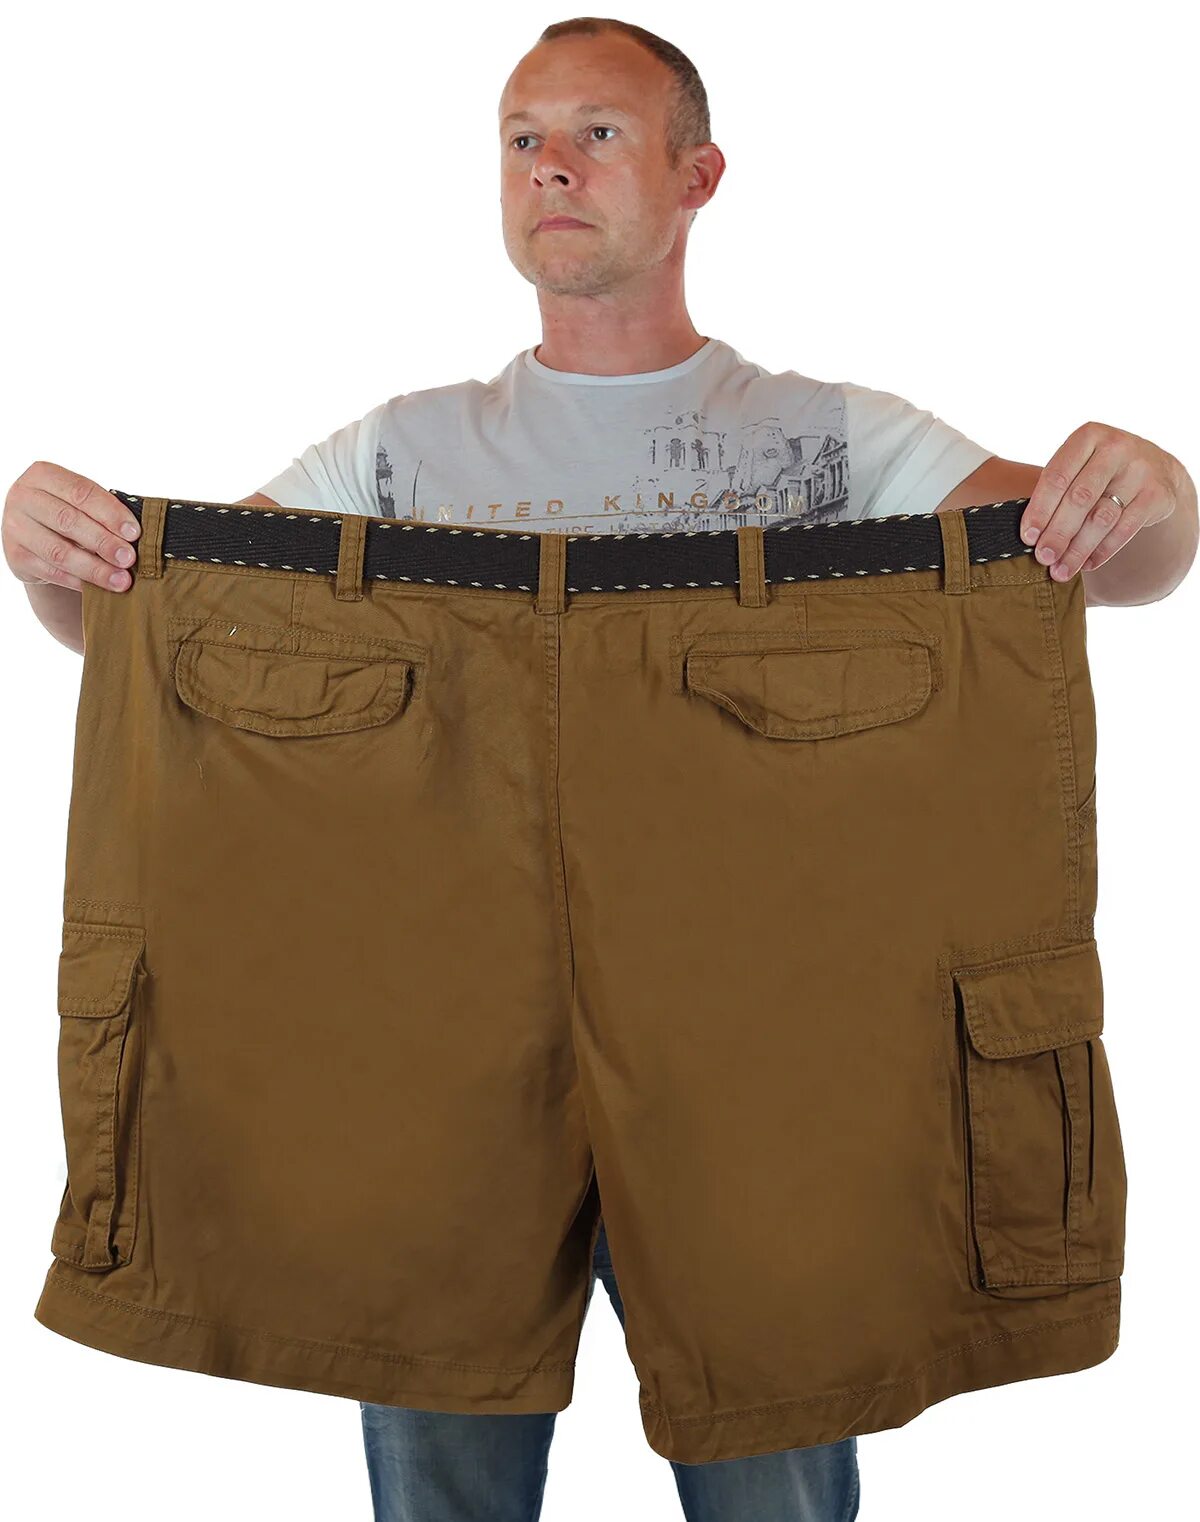 Мужские шорты баталы Foundry, США. Шорты огромные мужские. Шорты для полных мужчин. Широкие шорты мужские.